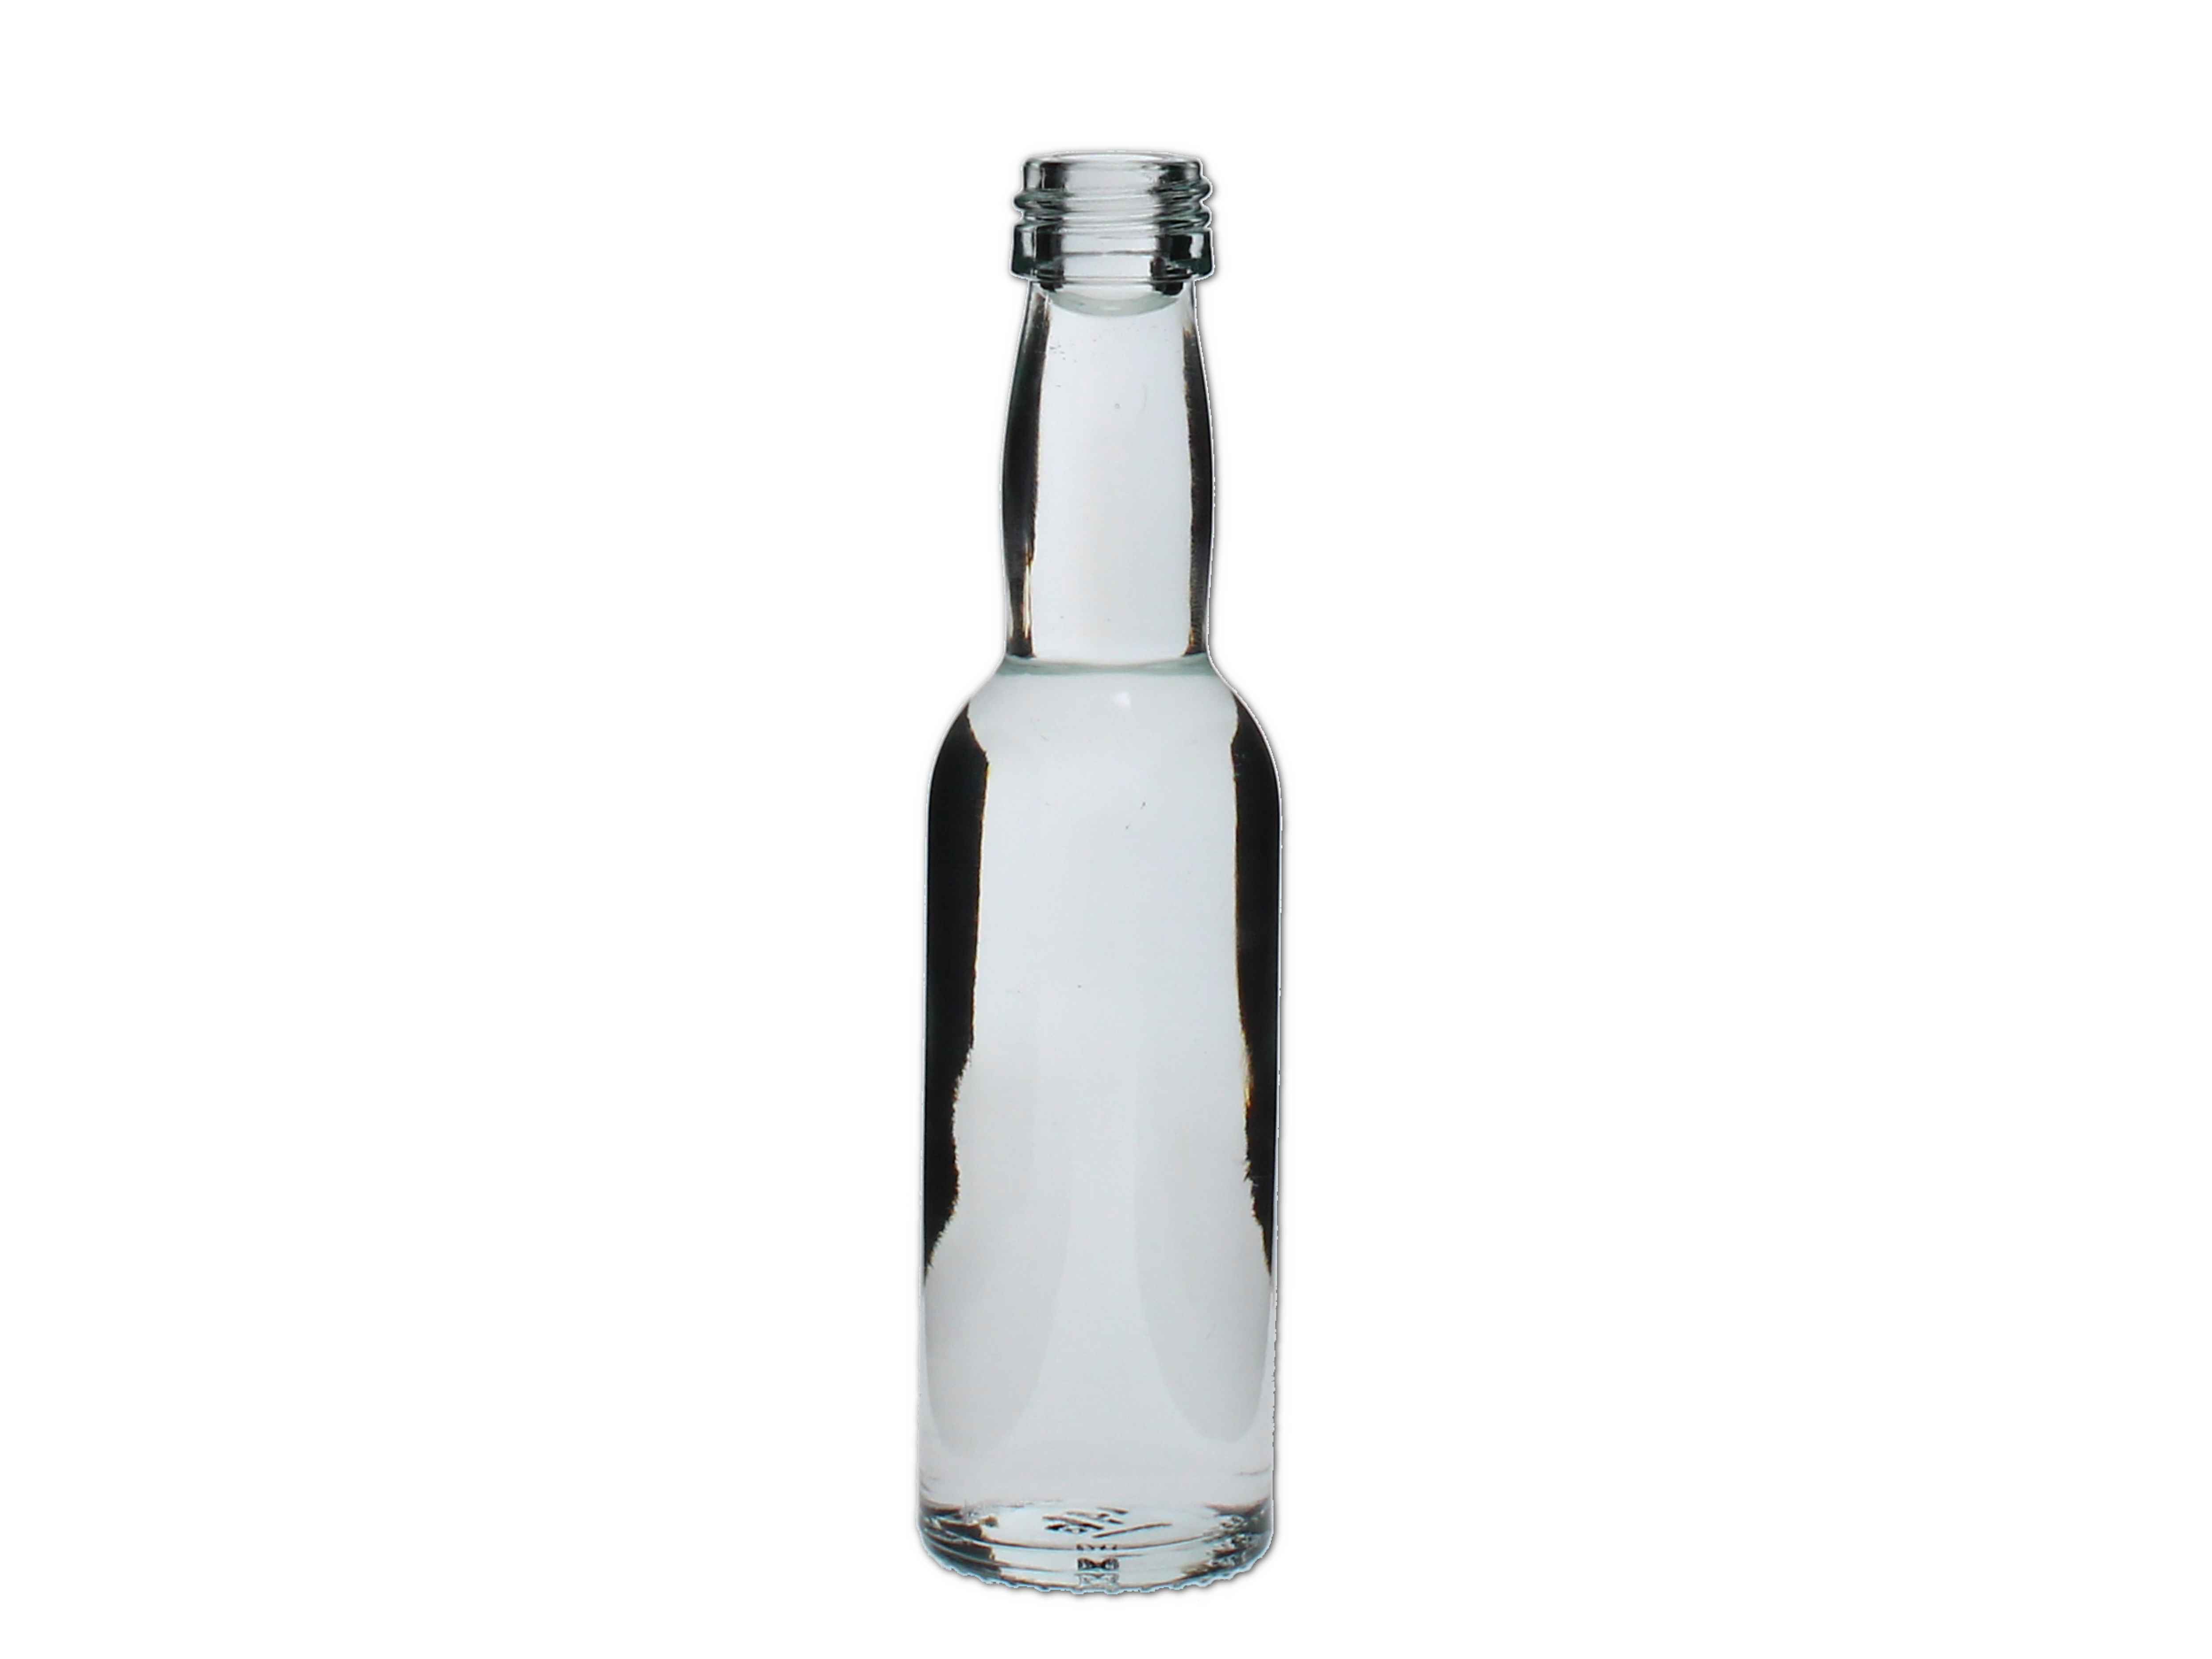    Kropfhalsflasche 40ml (GL18) - Abverkaufspreis